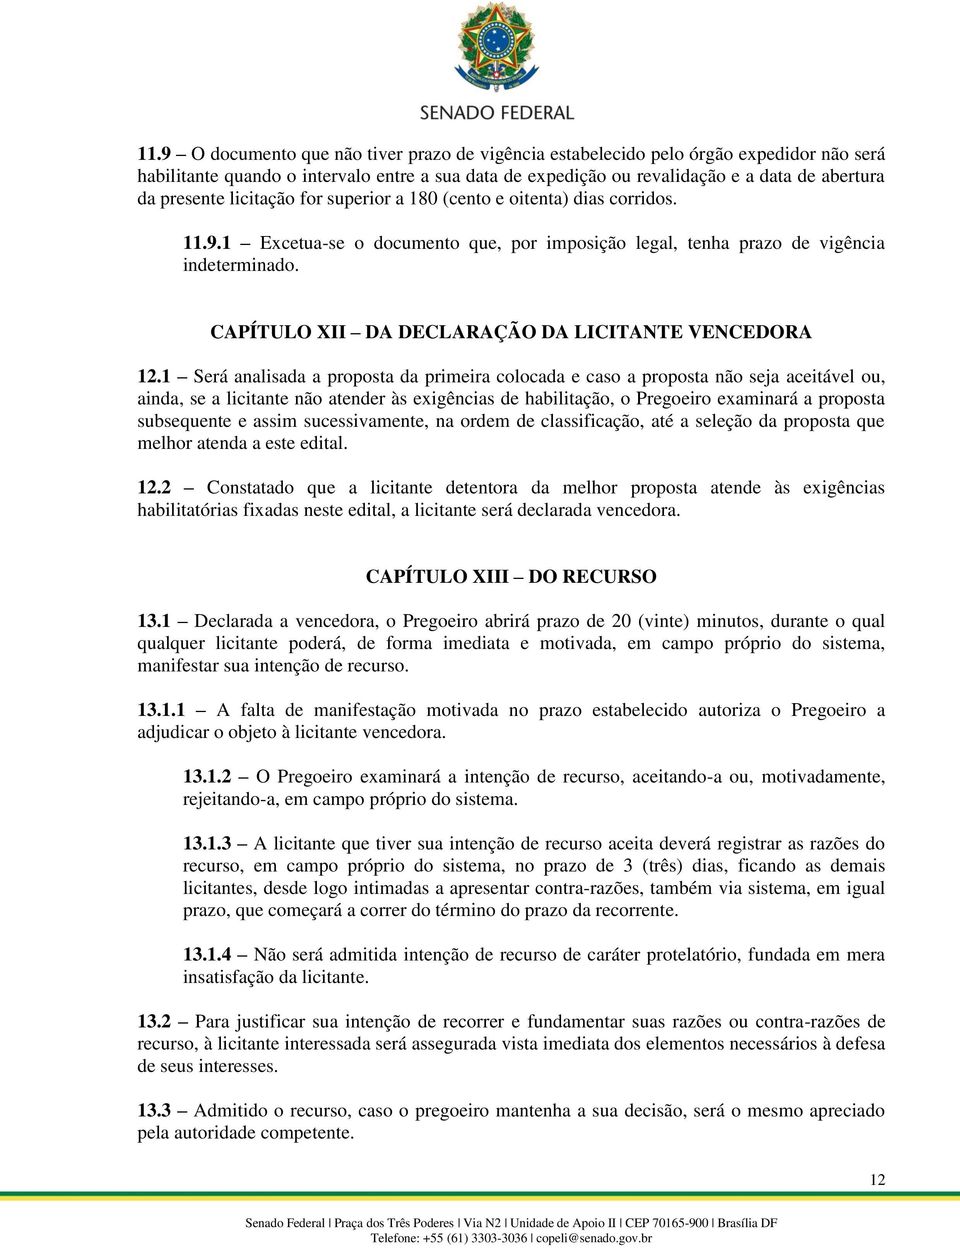 CAPÍTULO XII DA DECLARAÇÃO DA LICITANTE VENCEDORA 12.